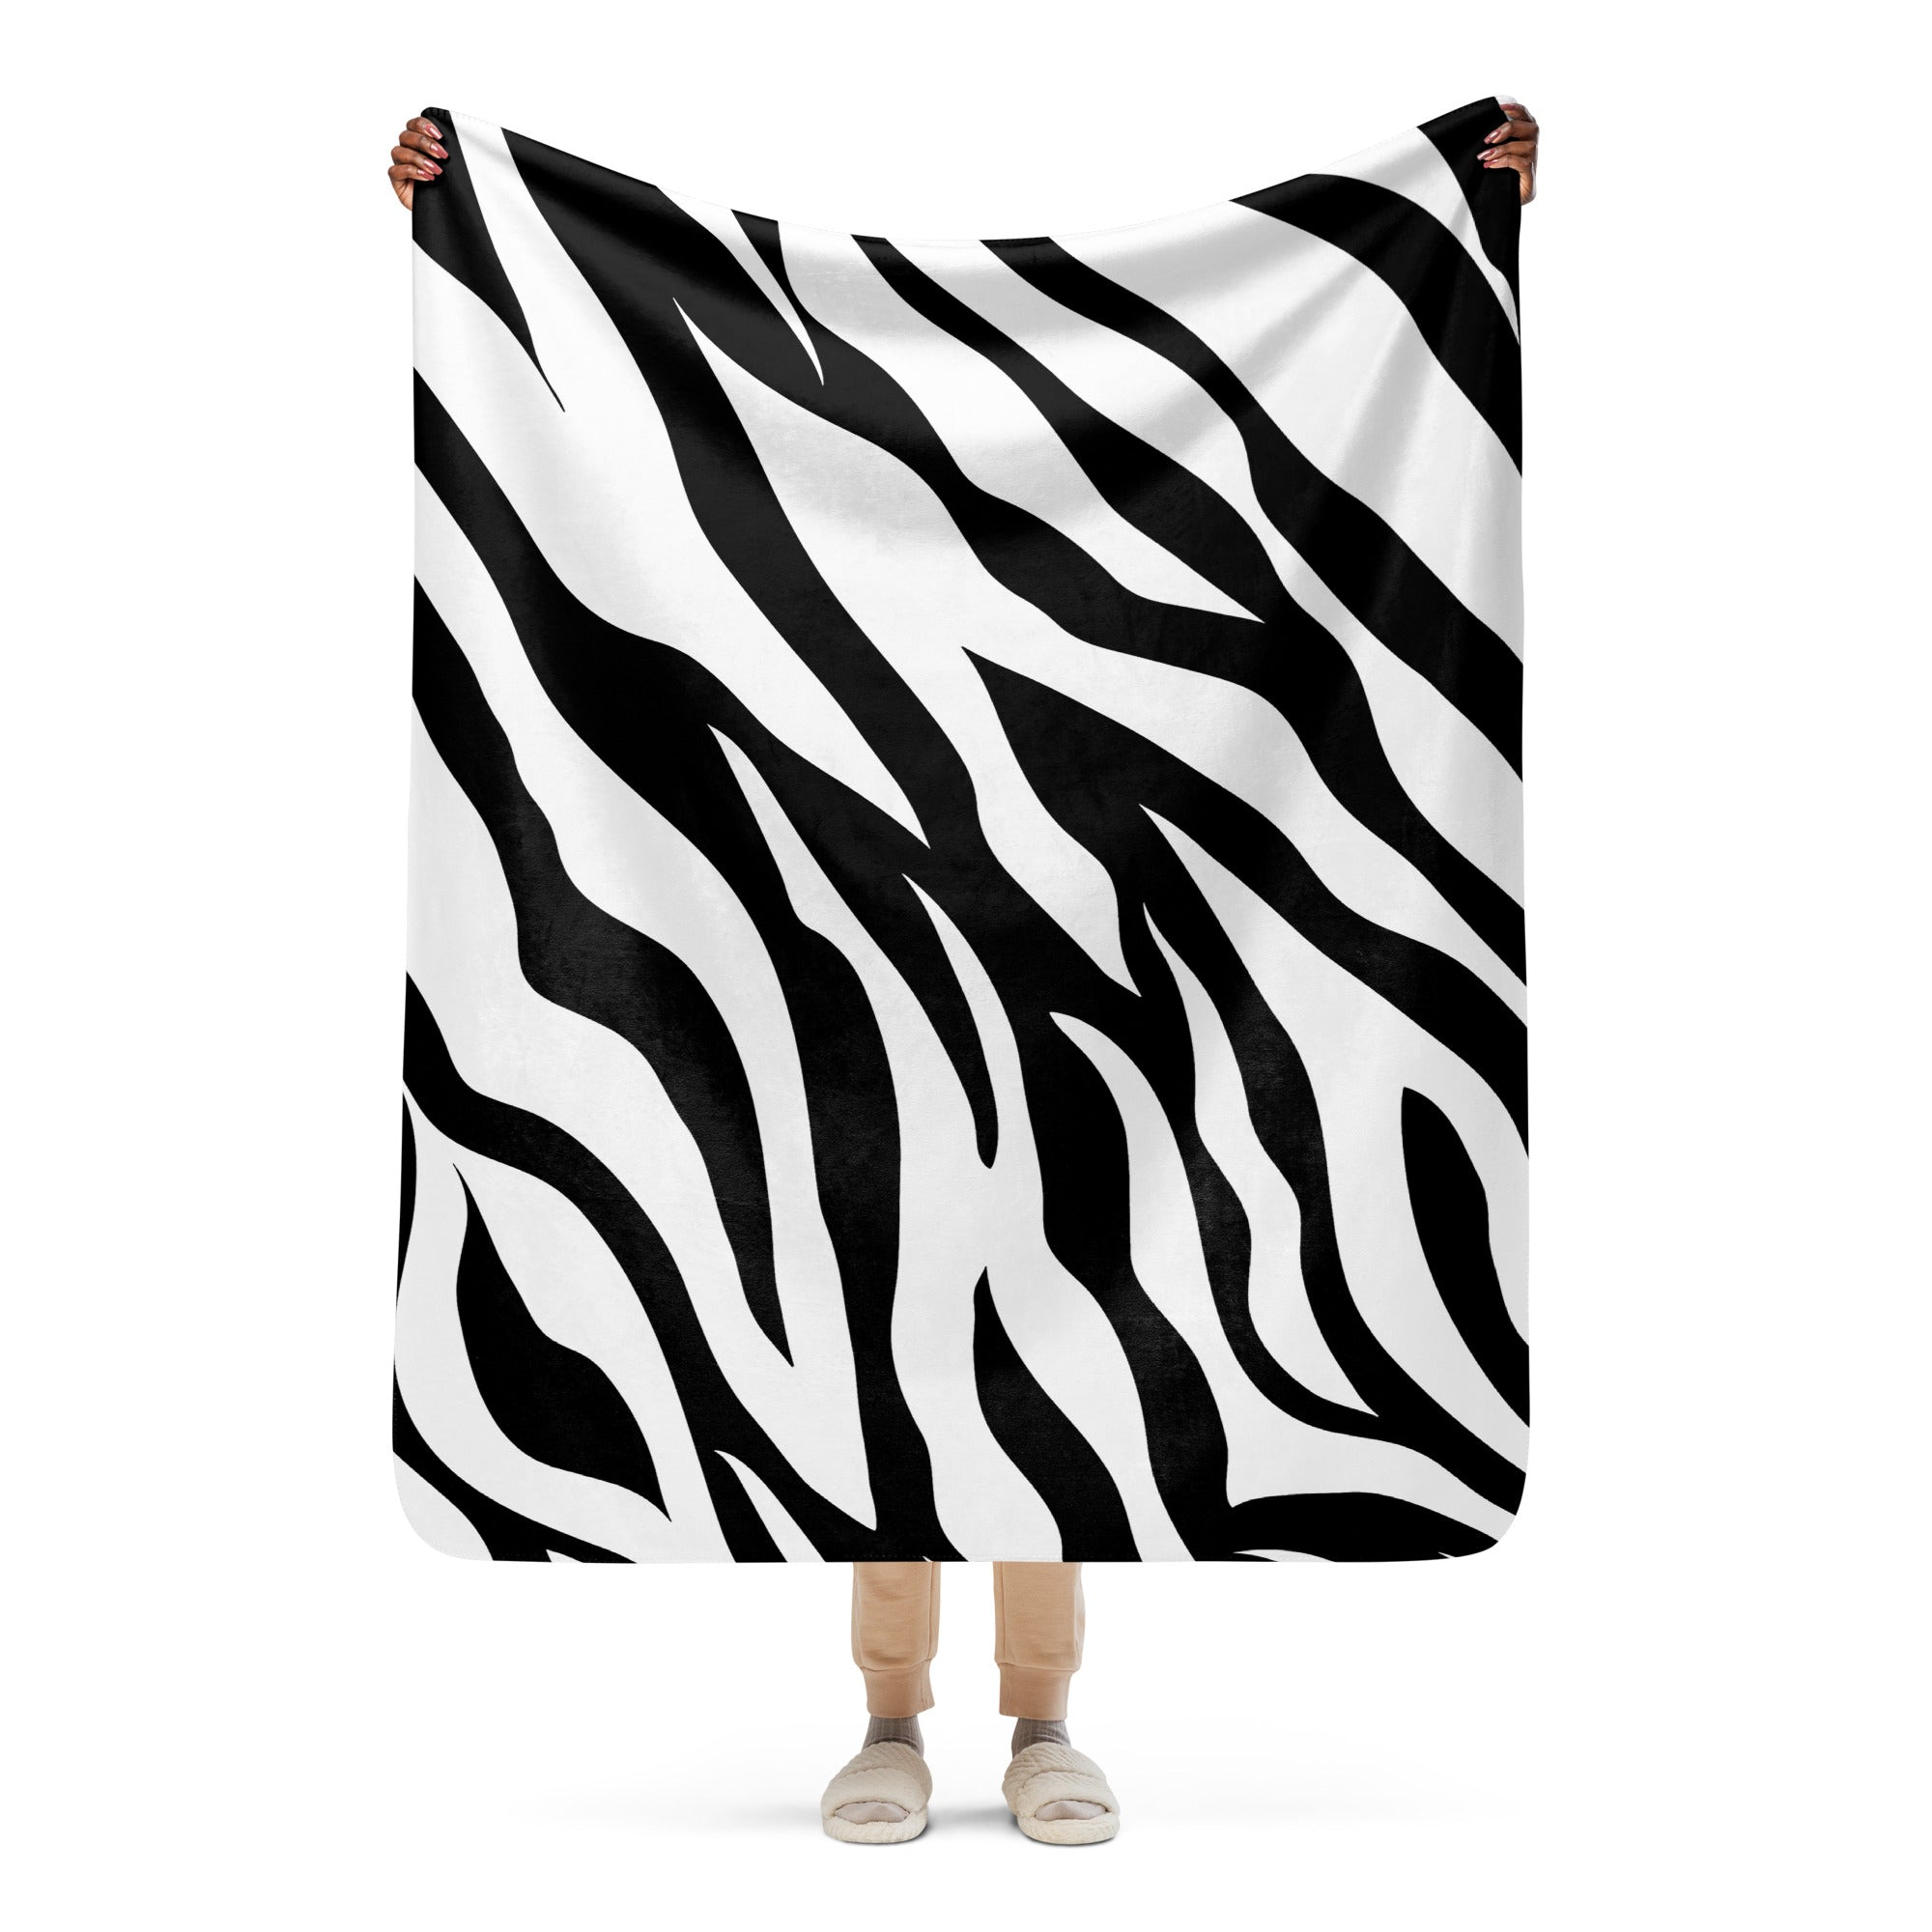 Cozy Zebra Sherpa blanket